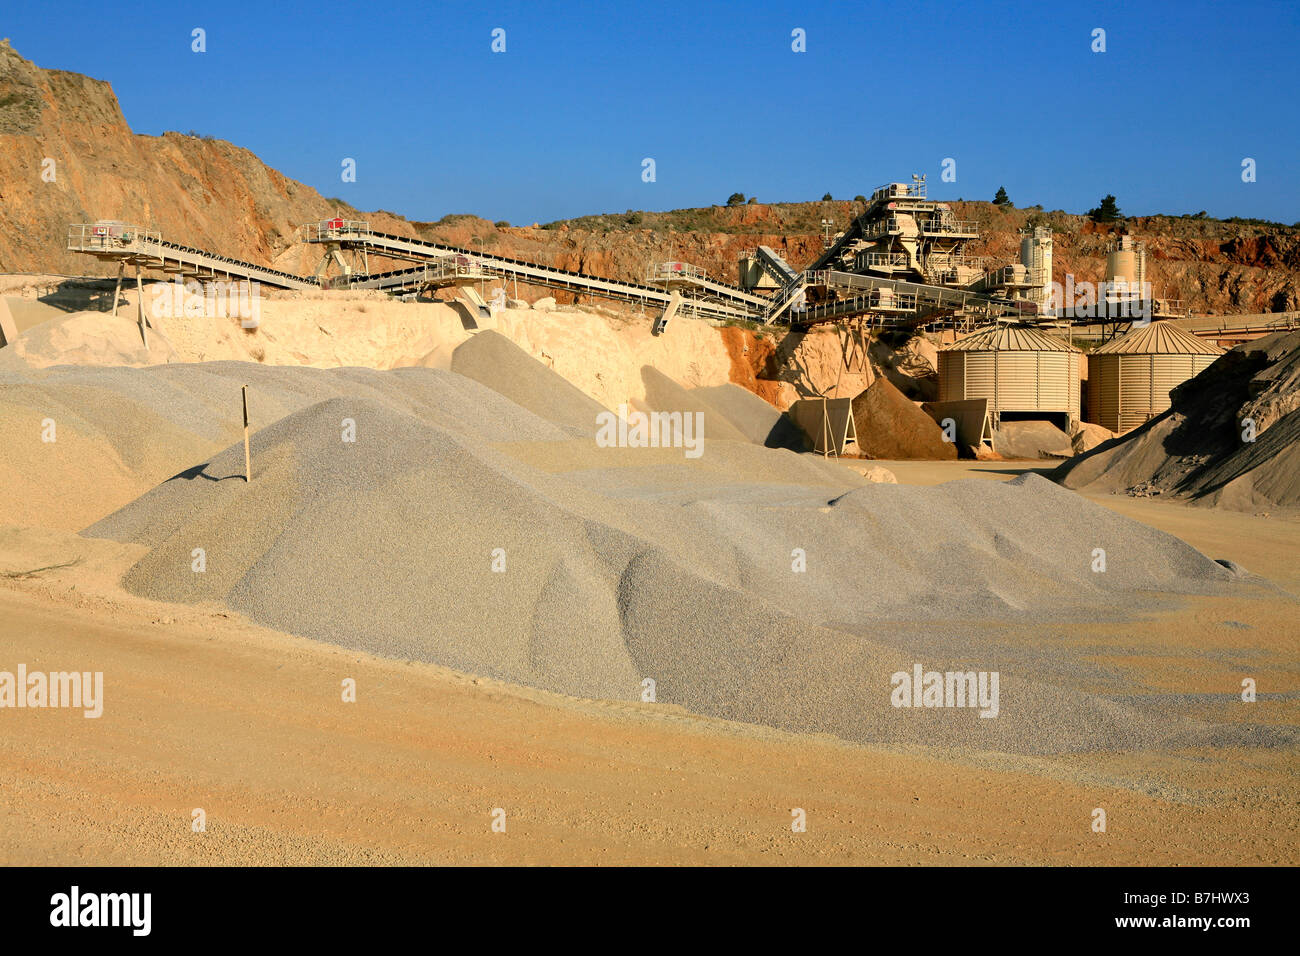 Usine de ciment en Aude, France Banque D'Images